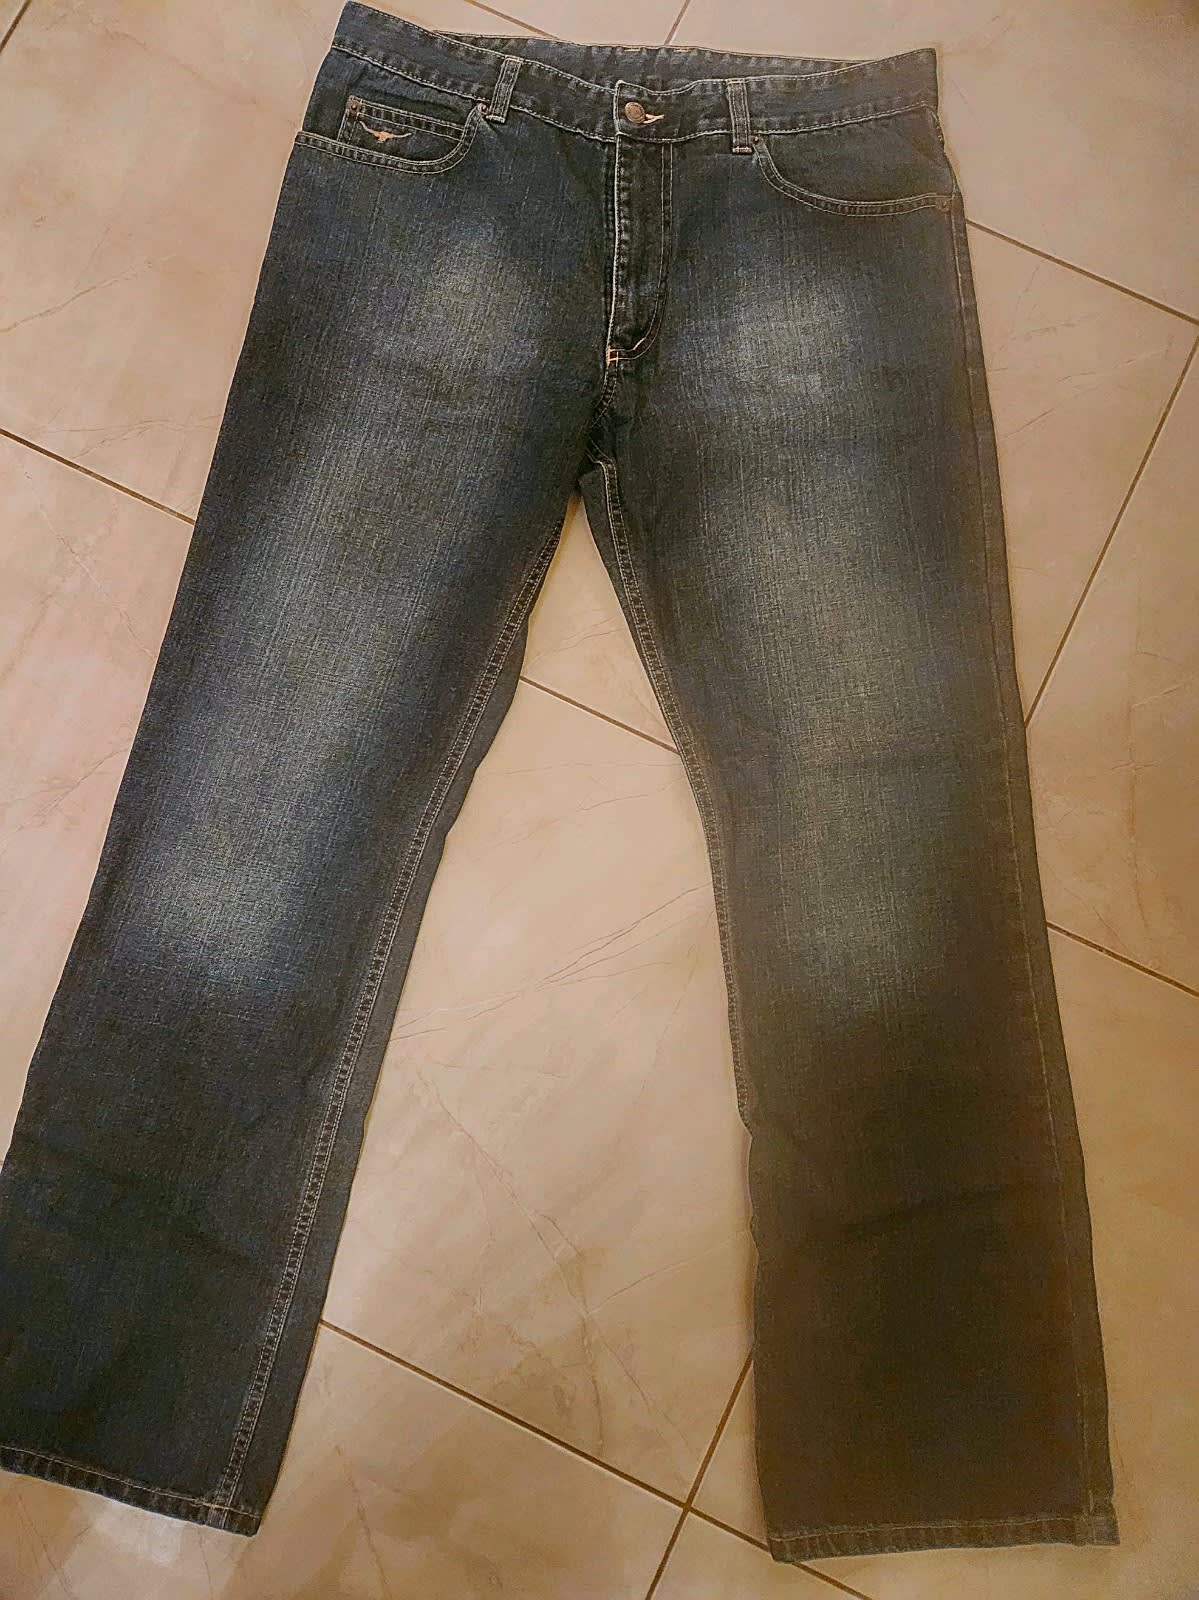 Bone Cleanskin Jeans, R.M.Williams Moleskin Jeans